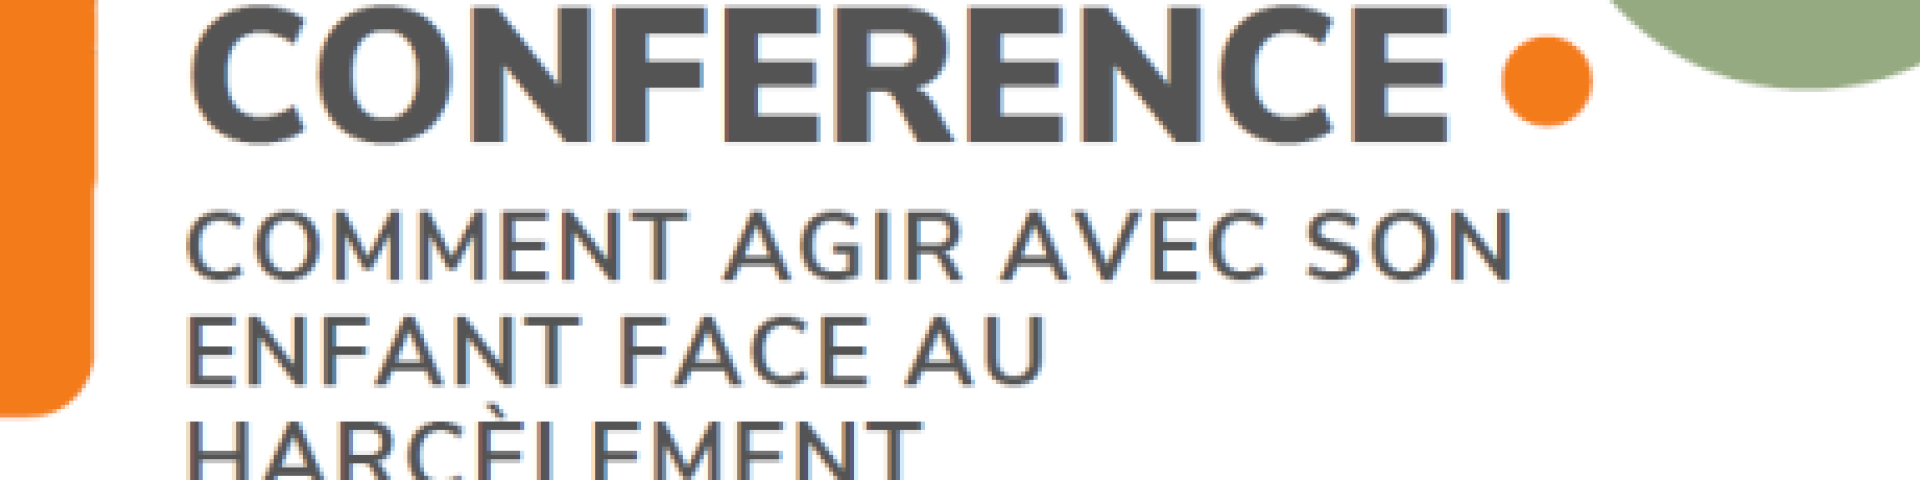 Conférence sur le harcèlement Val-de-Travers 2023